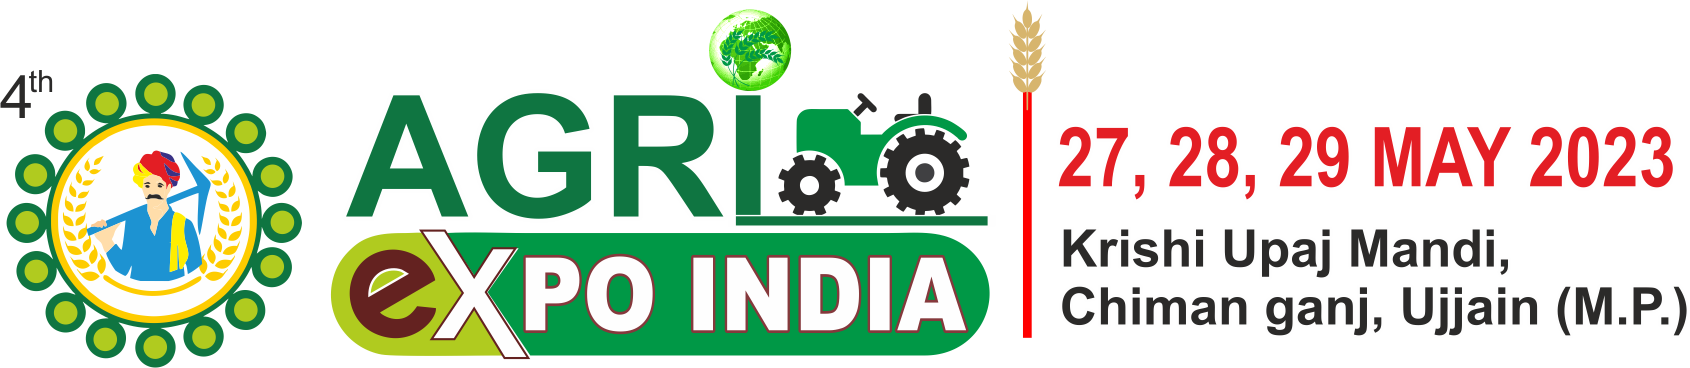  AGRI EXPO INDIA 2023 